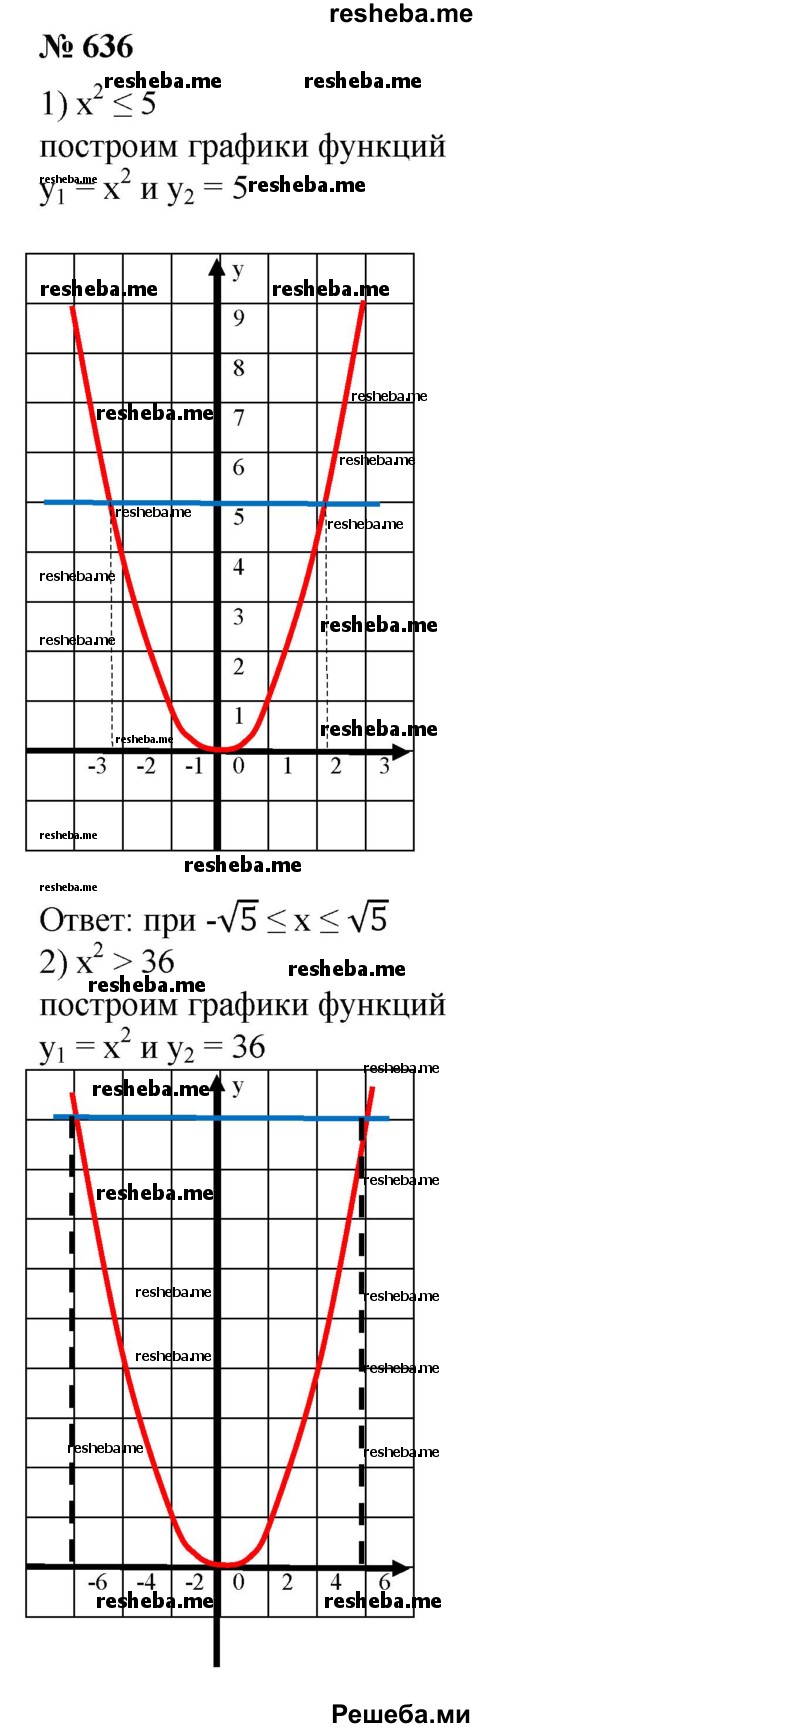 
    636. Решить неравенство:
1) х^2 ≤5; 
2) х^2 ≥ 36.
